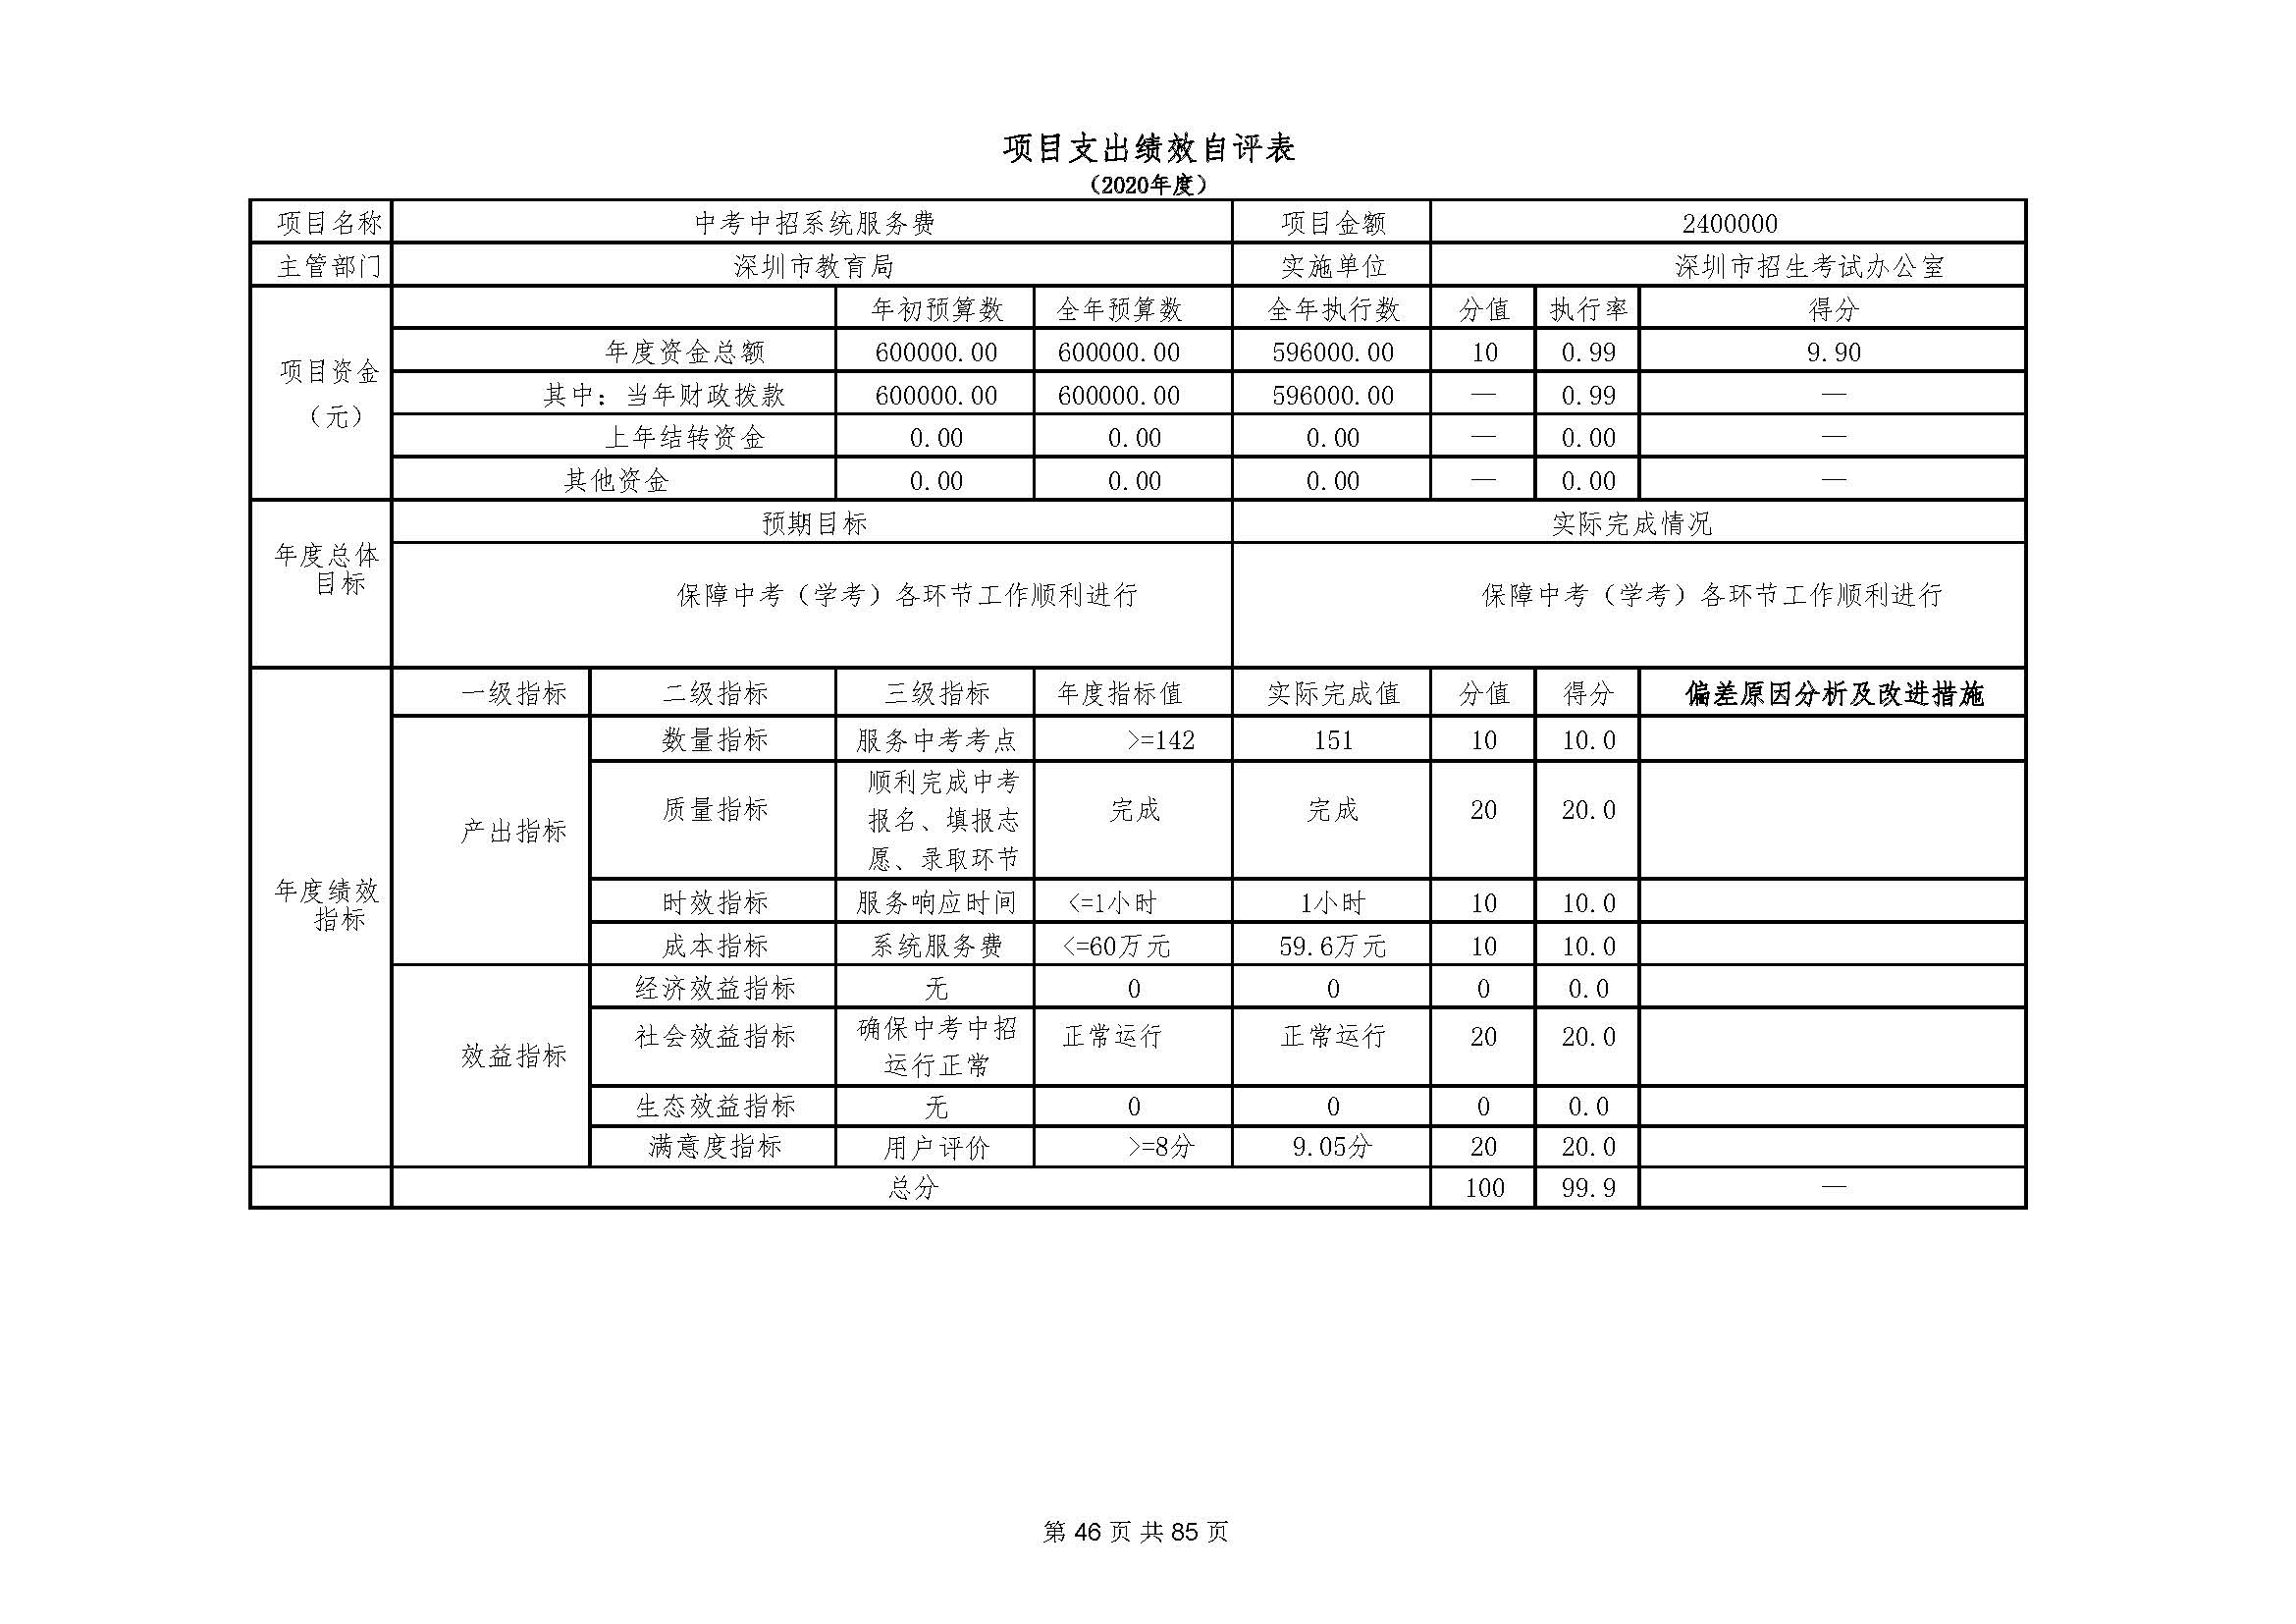 深圳市招生考试办公室2020年度部门决算_页面_47.jpg